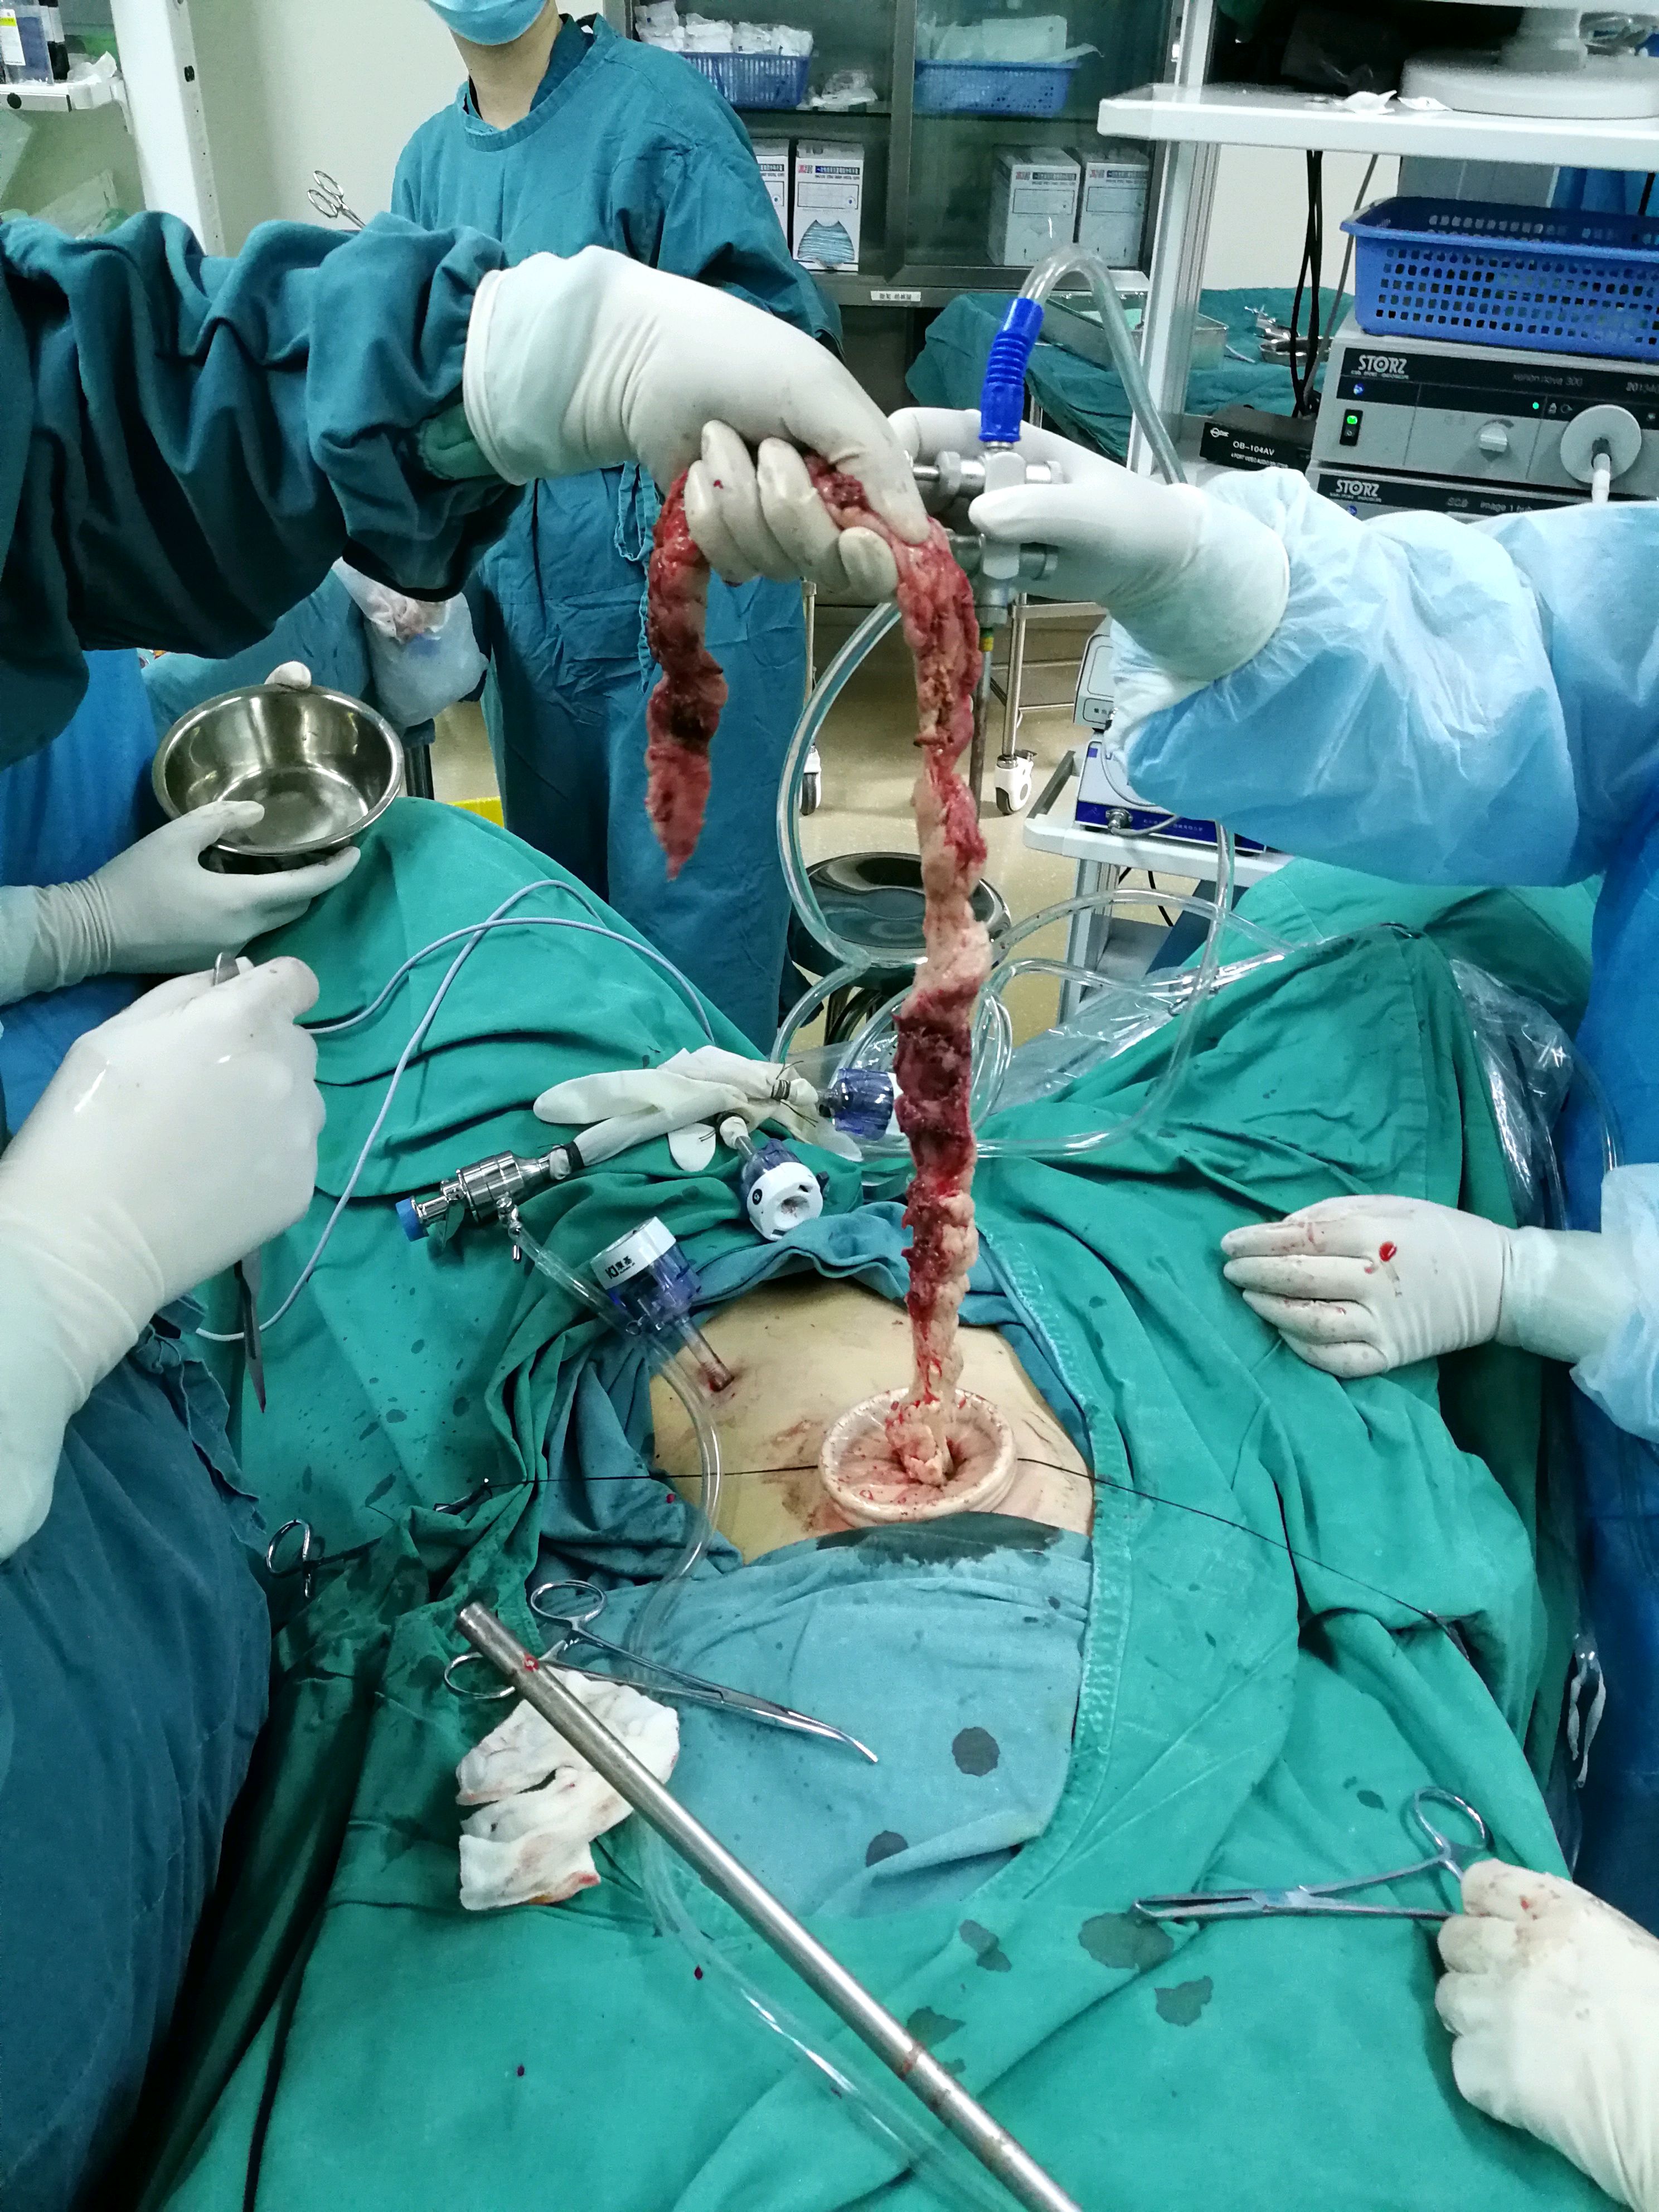 7经脐单孔腹腔镜手术是一种新术式吗?